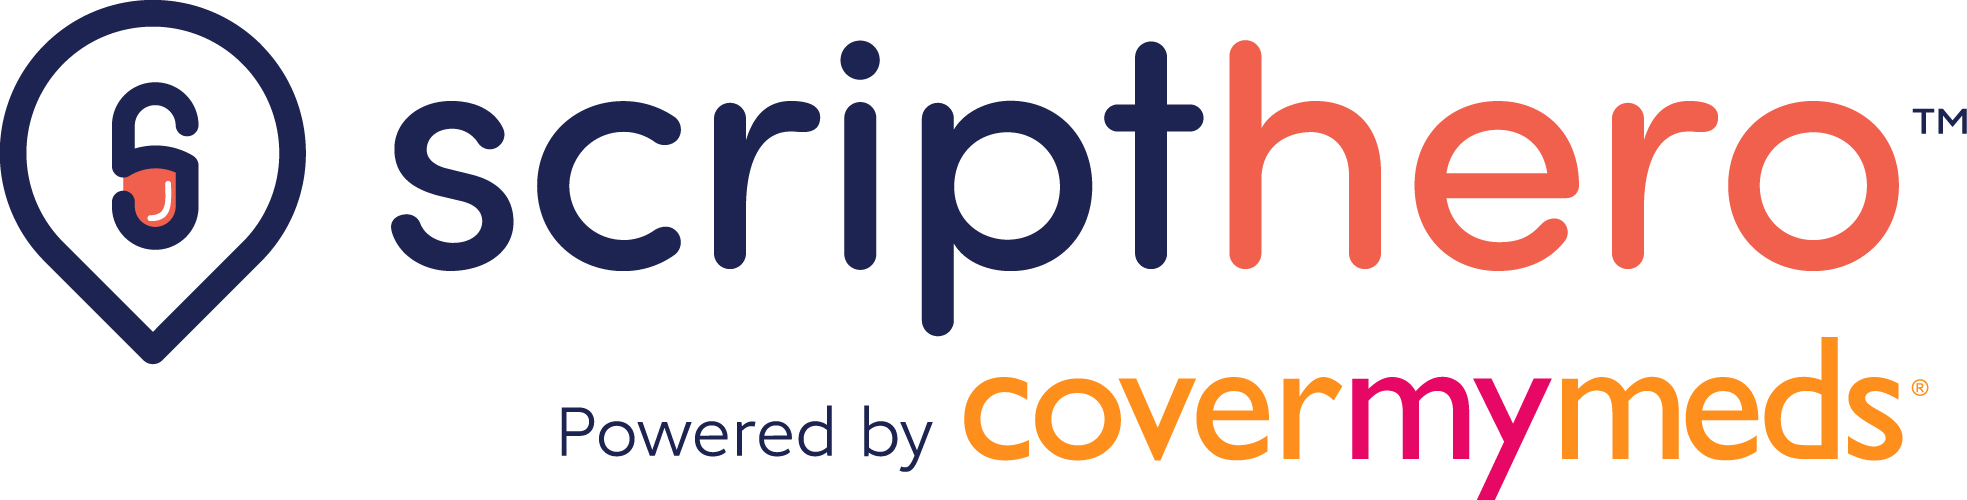 ScriptHero logo